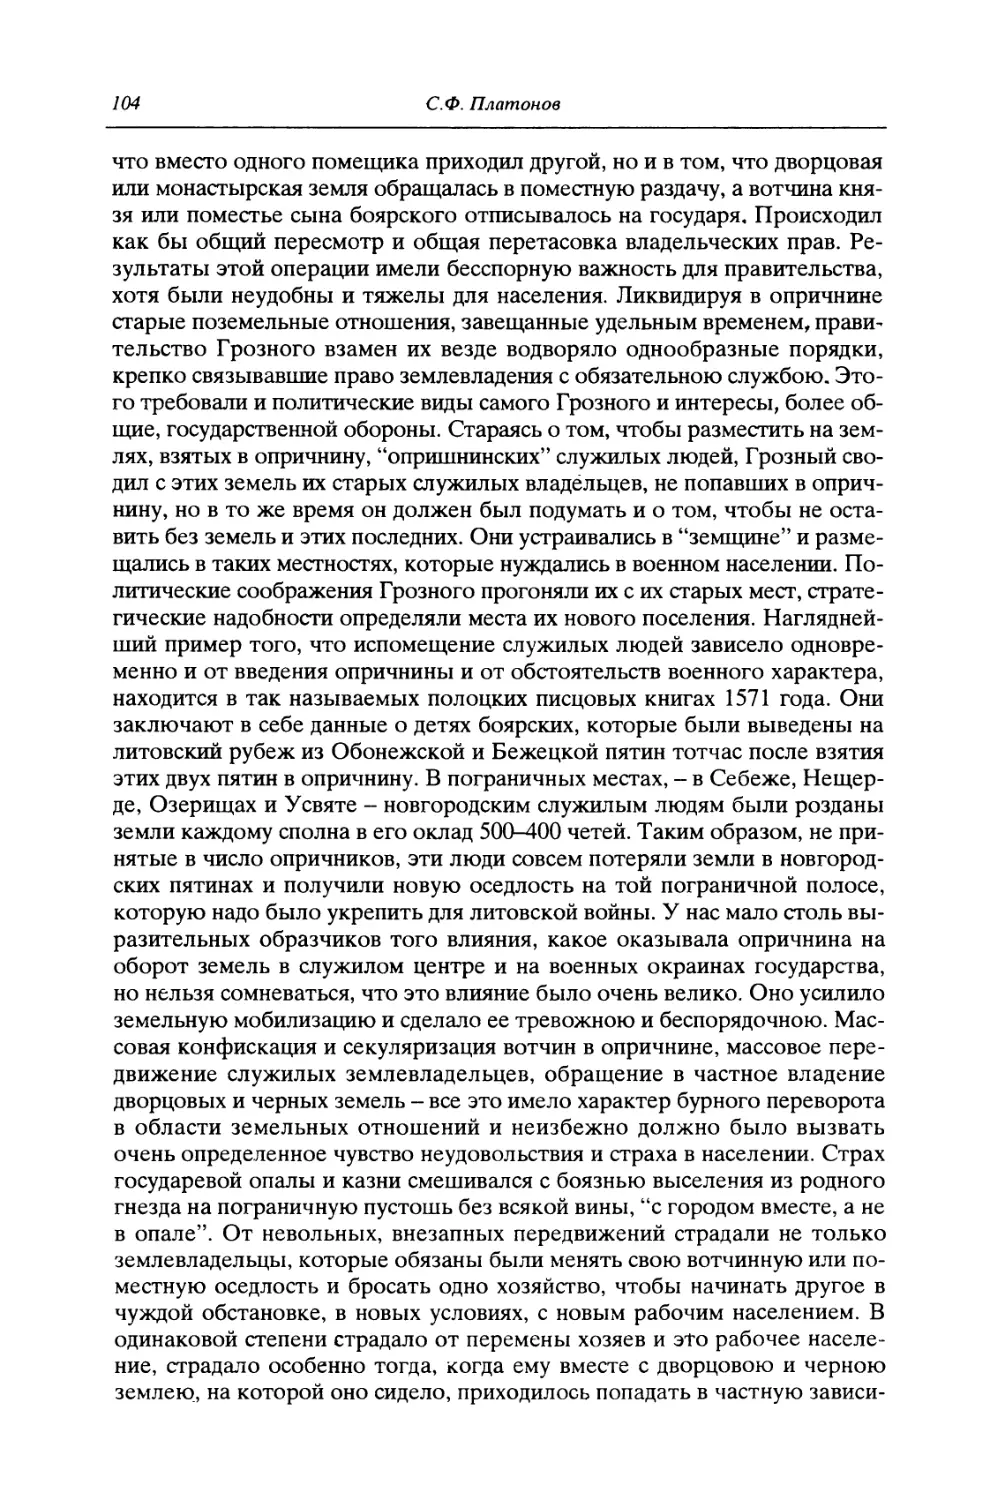 IV. Социальное противоречие в московской жизни XVI века